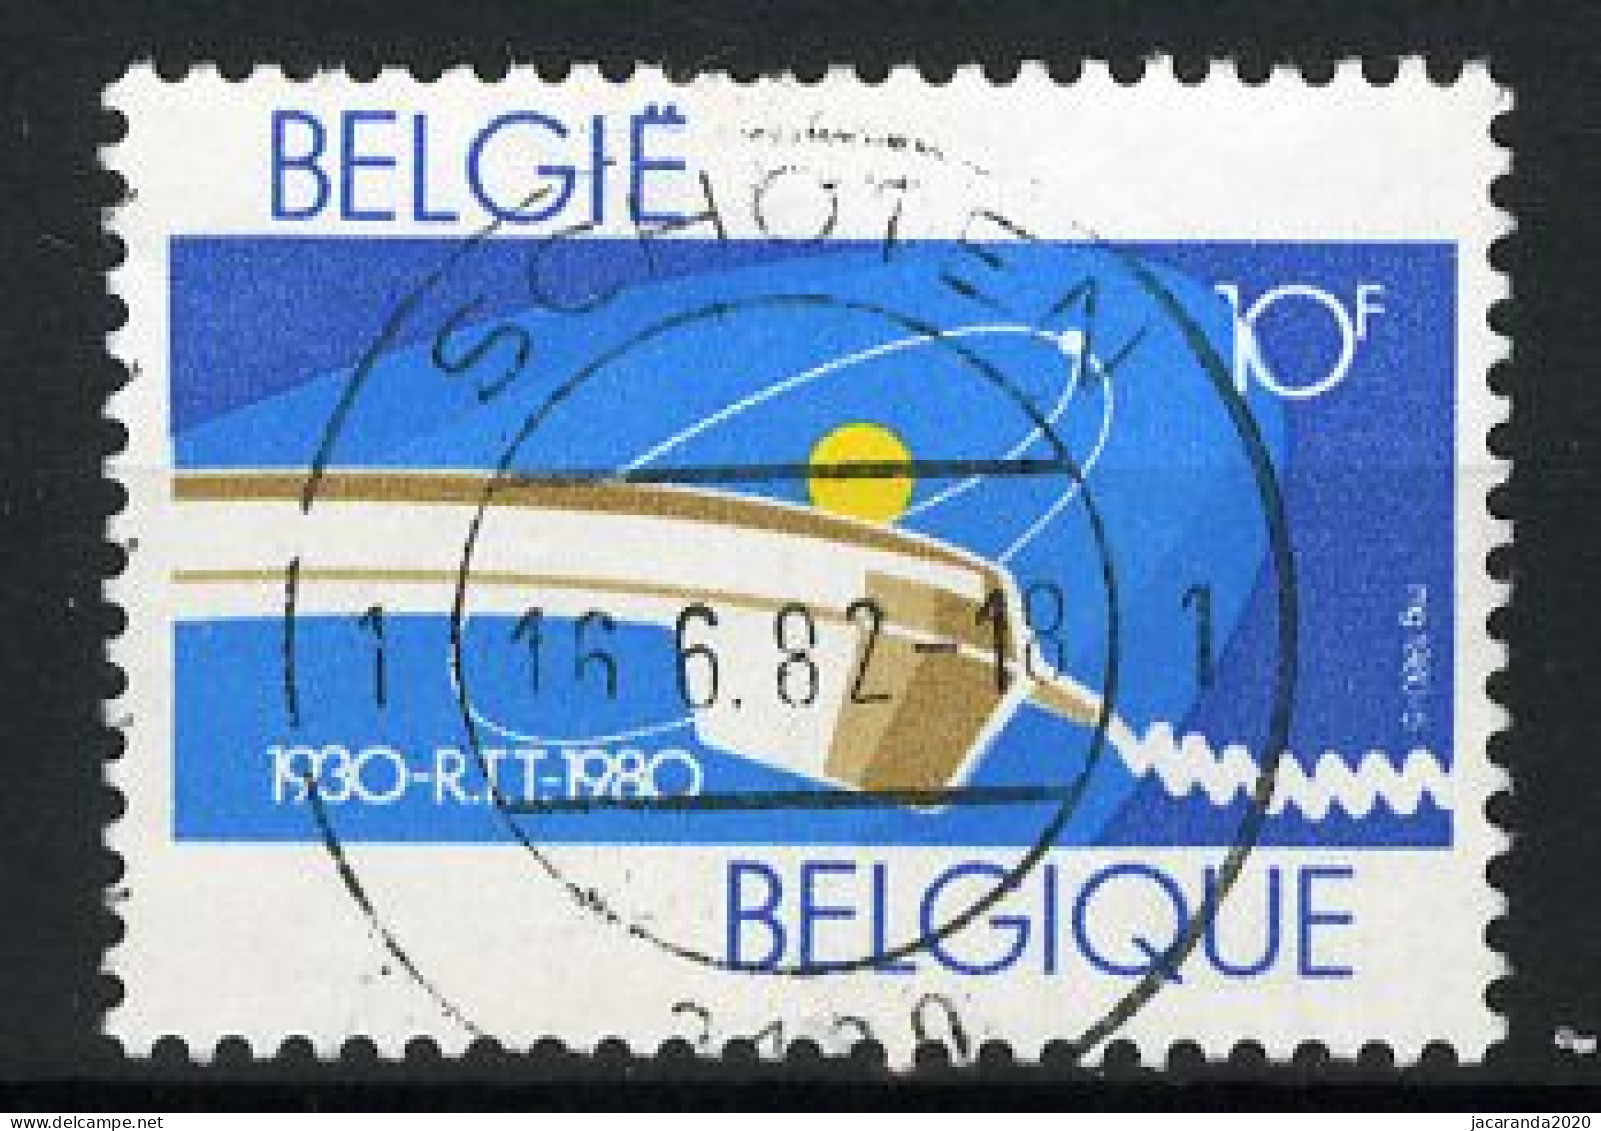 België 1969 - 50 Jaar R.T.T. - Gestempeld - Oblitéré -used - Gebraucht